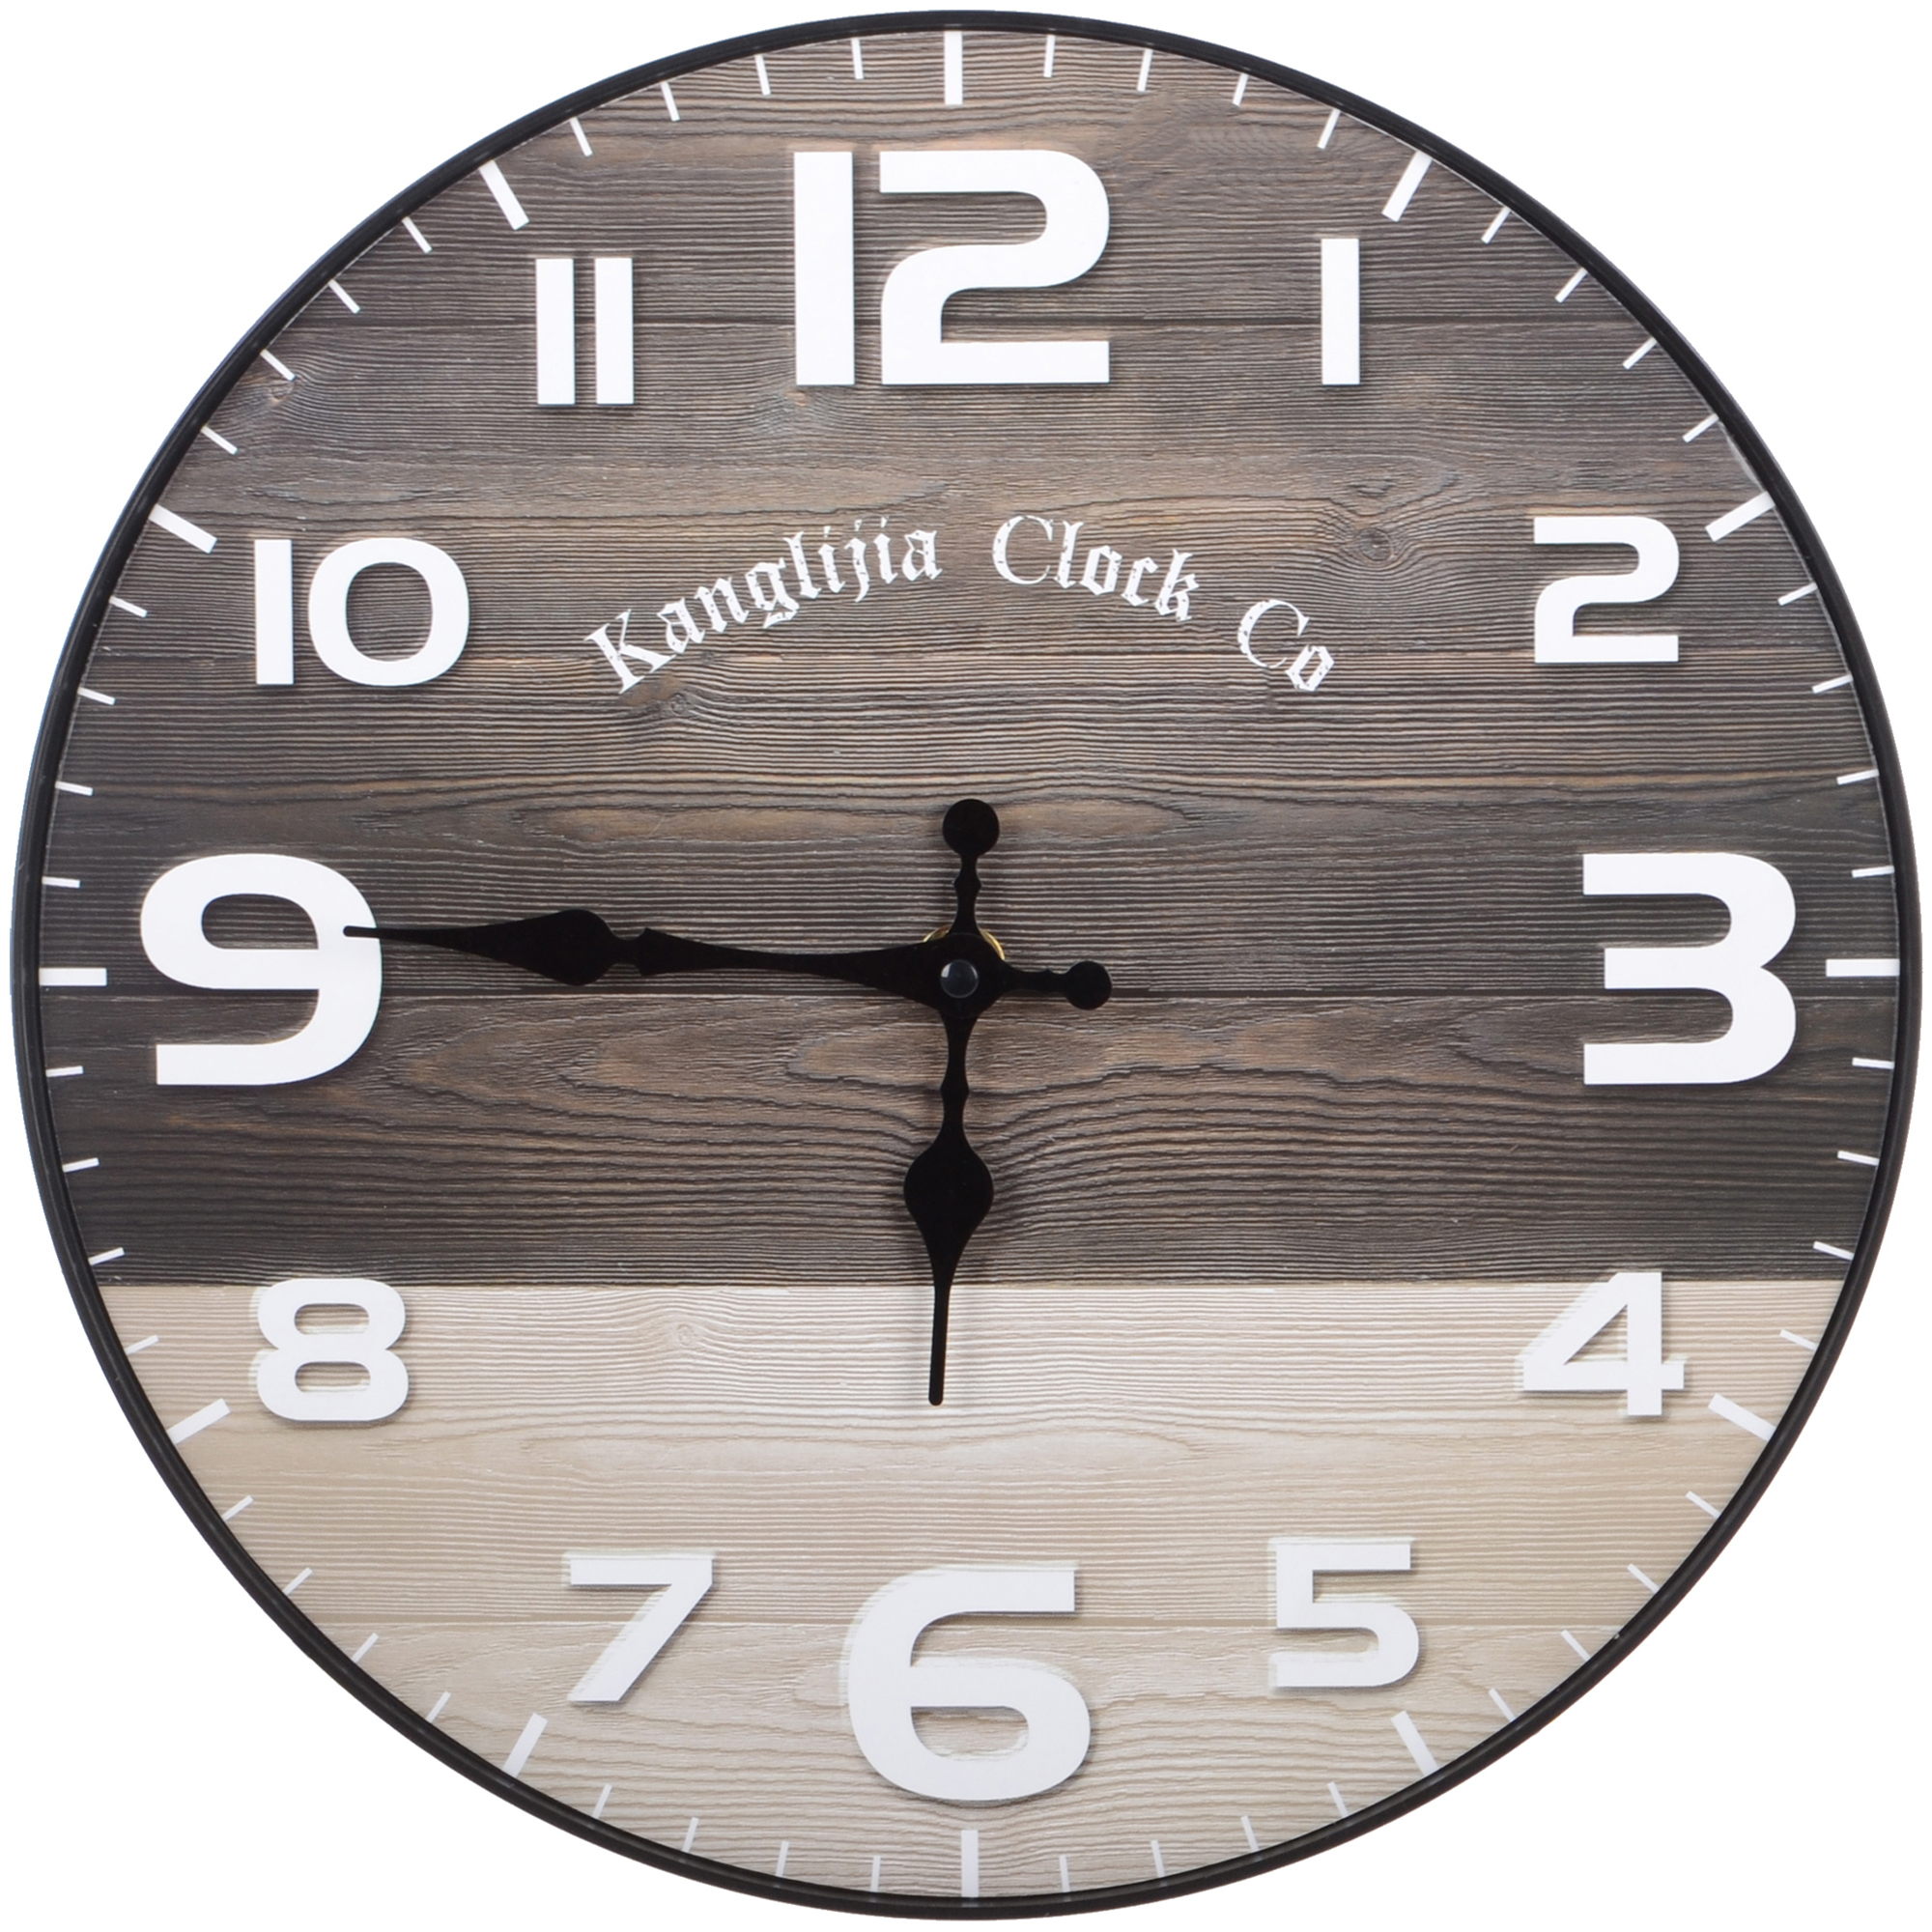 Часы настенные Kanglijia Clock коричневые 29,5х29,5х3,5 см часы электронные настольные будильник термометр с проекцией зеленые цифры 19 2х6 5см